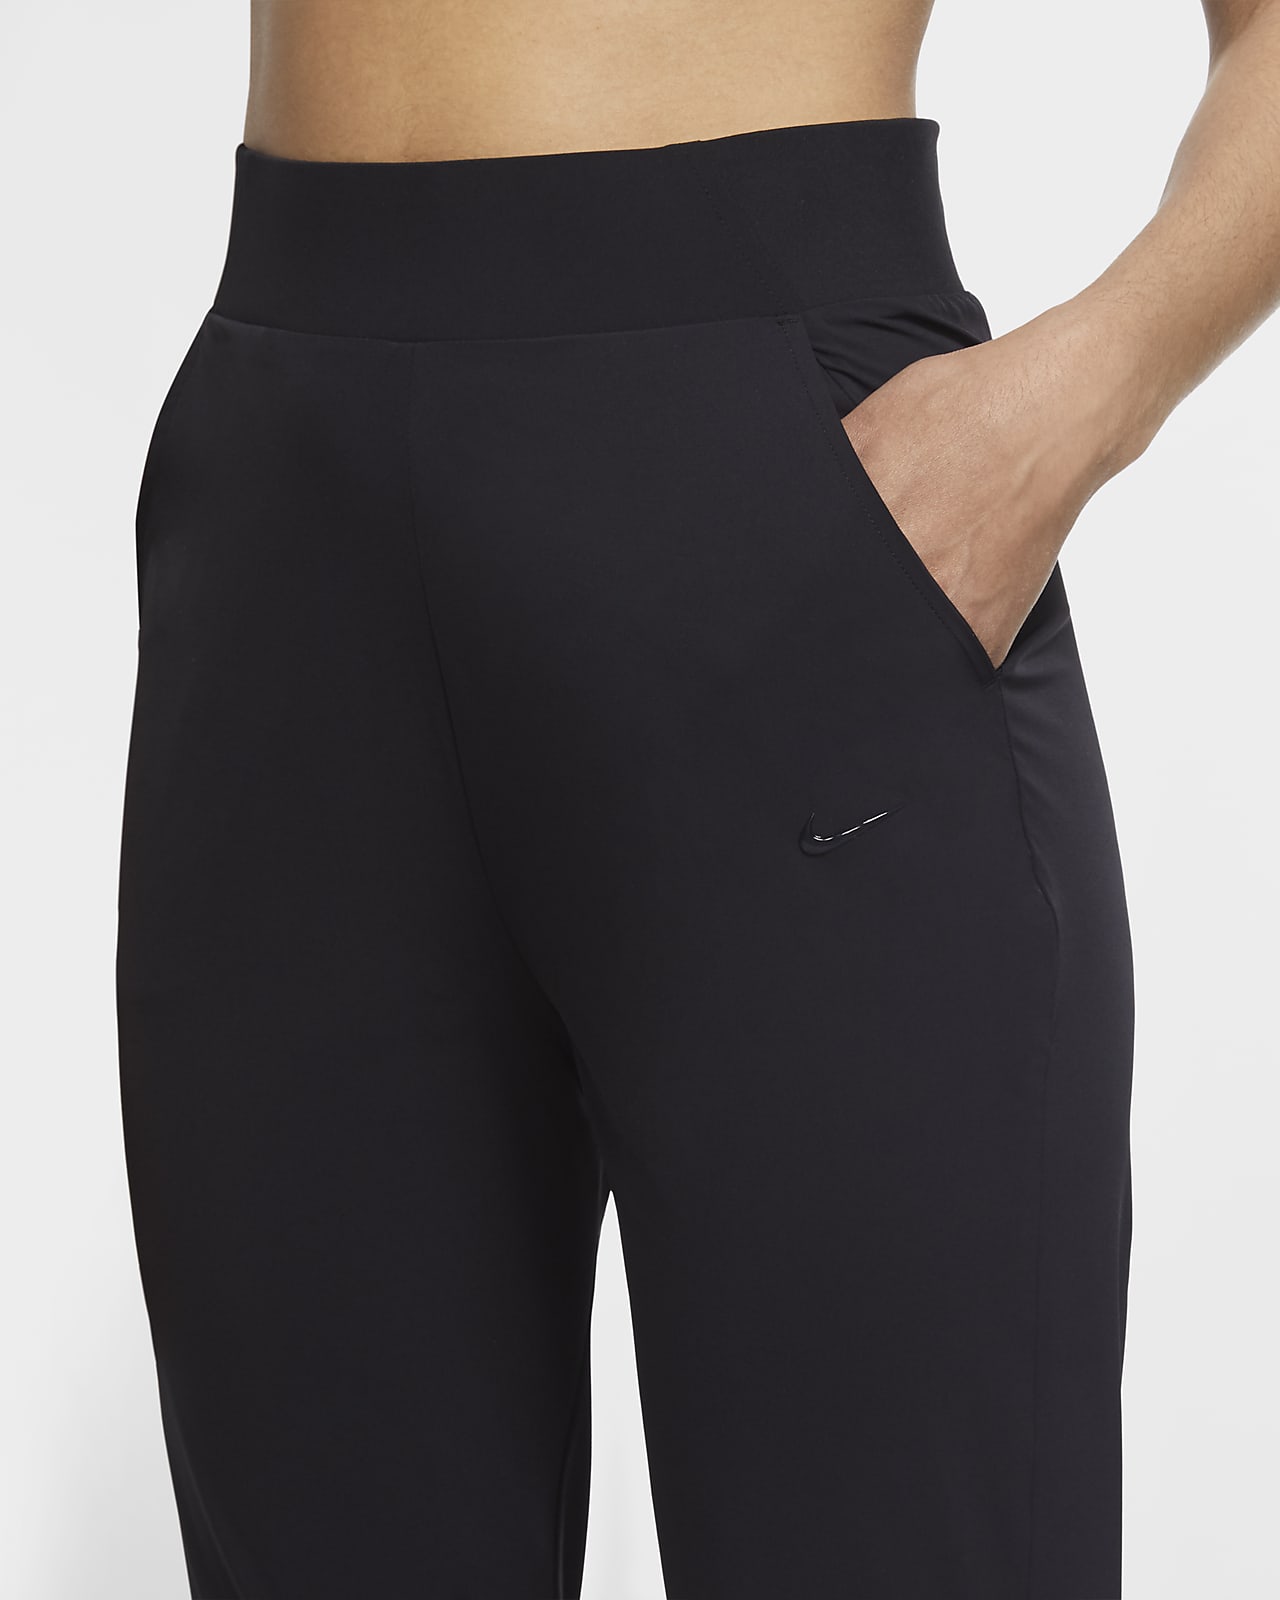 Plisado Grabar blanco Nike Bliss Luxe Pantalón de entrenamiento - Mujer. Nike ES